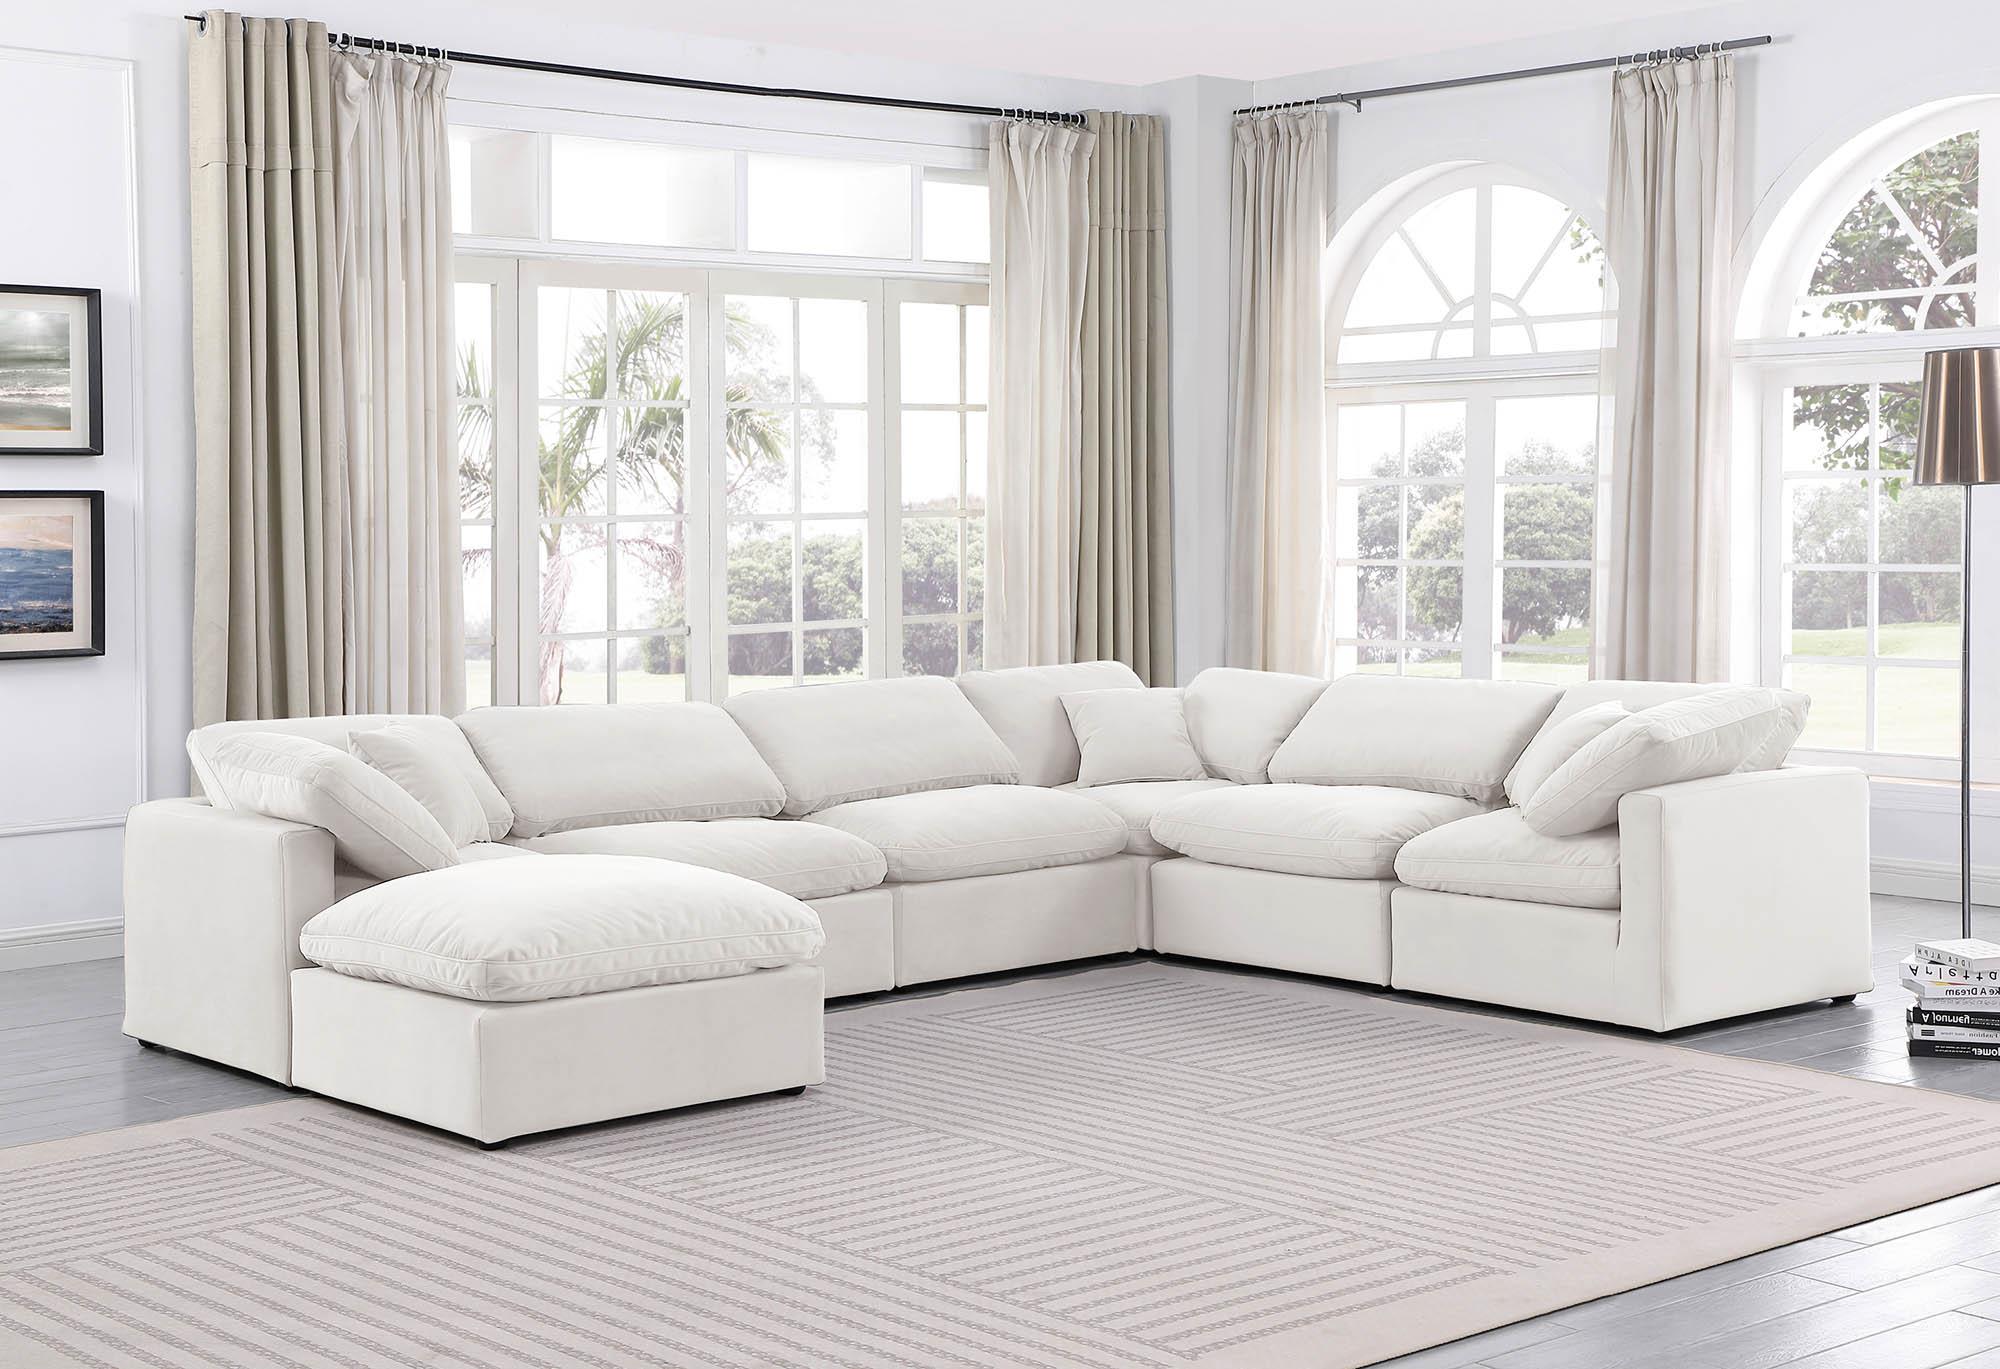 

    
Meridian Furniture INDULGE 147Cream-Sec7A Modular Sectional Sofa Cream 147Cream-Sec7A
